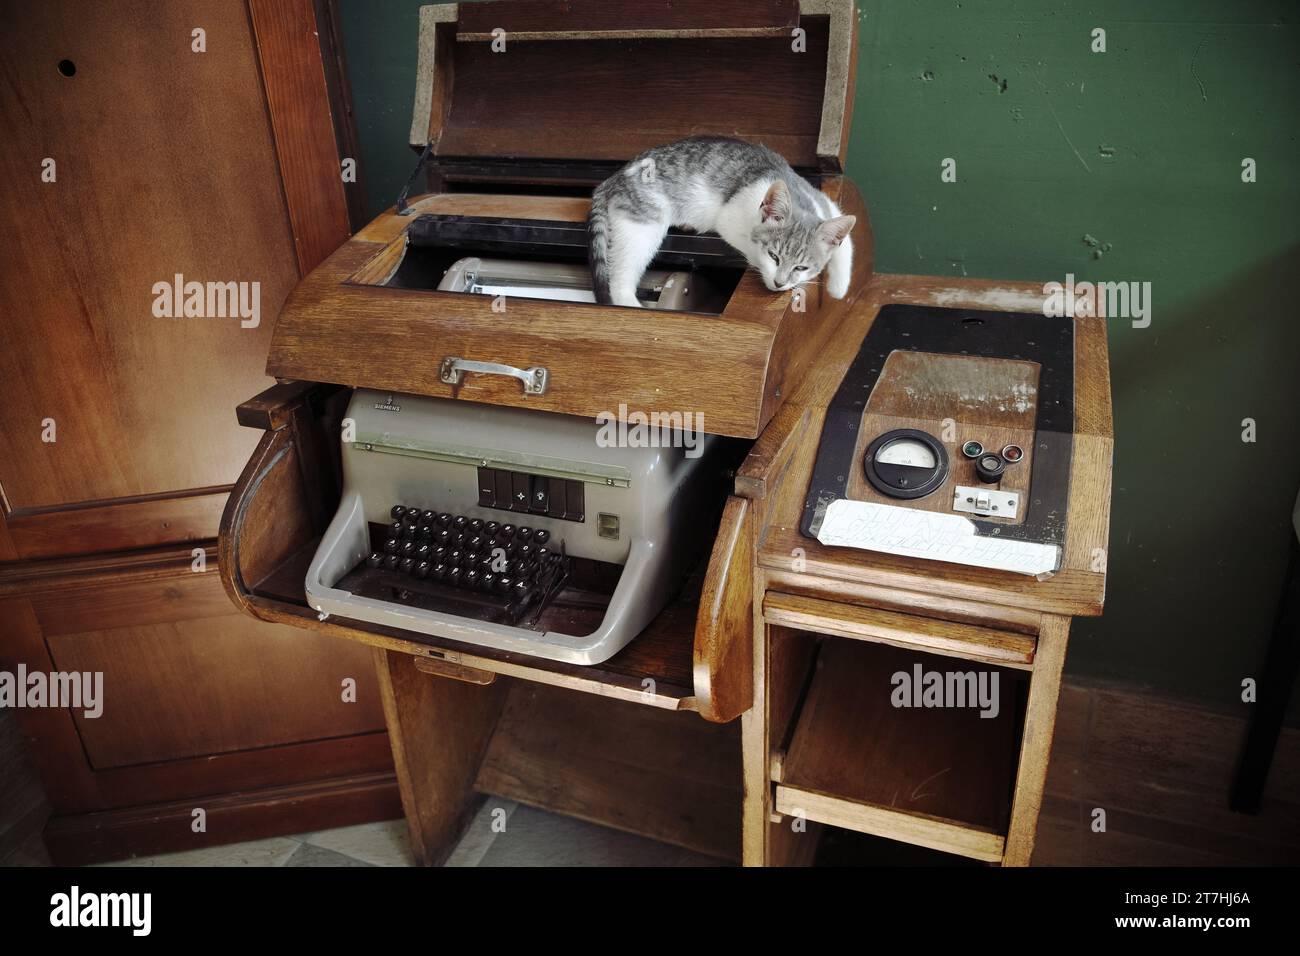 Téléimprimeur Siemens Fernschreiber T100 avec armoire en bois et chat couché sur le dessus, station Mokra Gora, Sargan huit, Serbie Banque D'Images